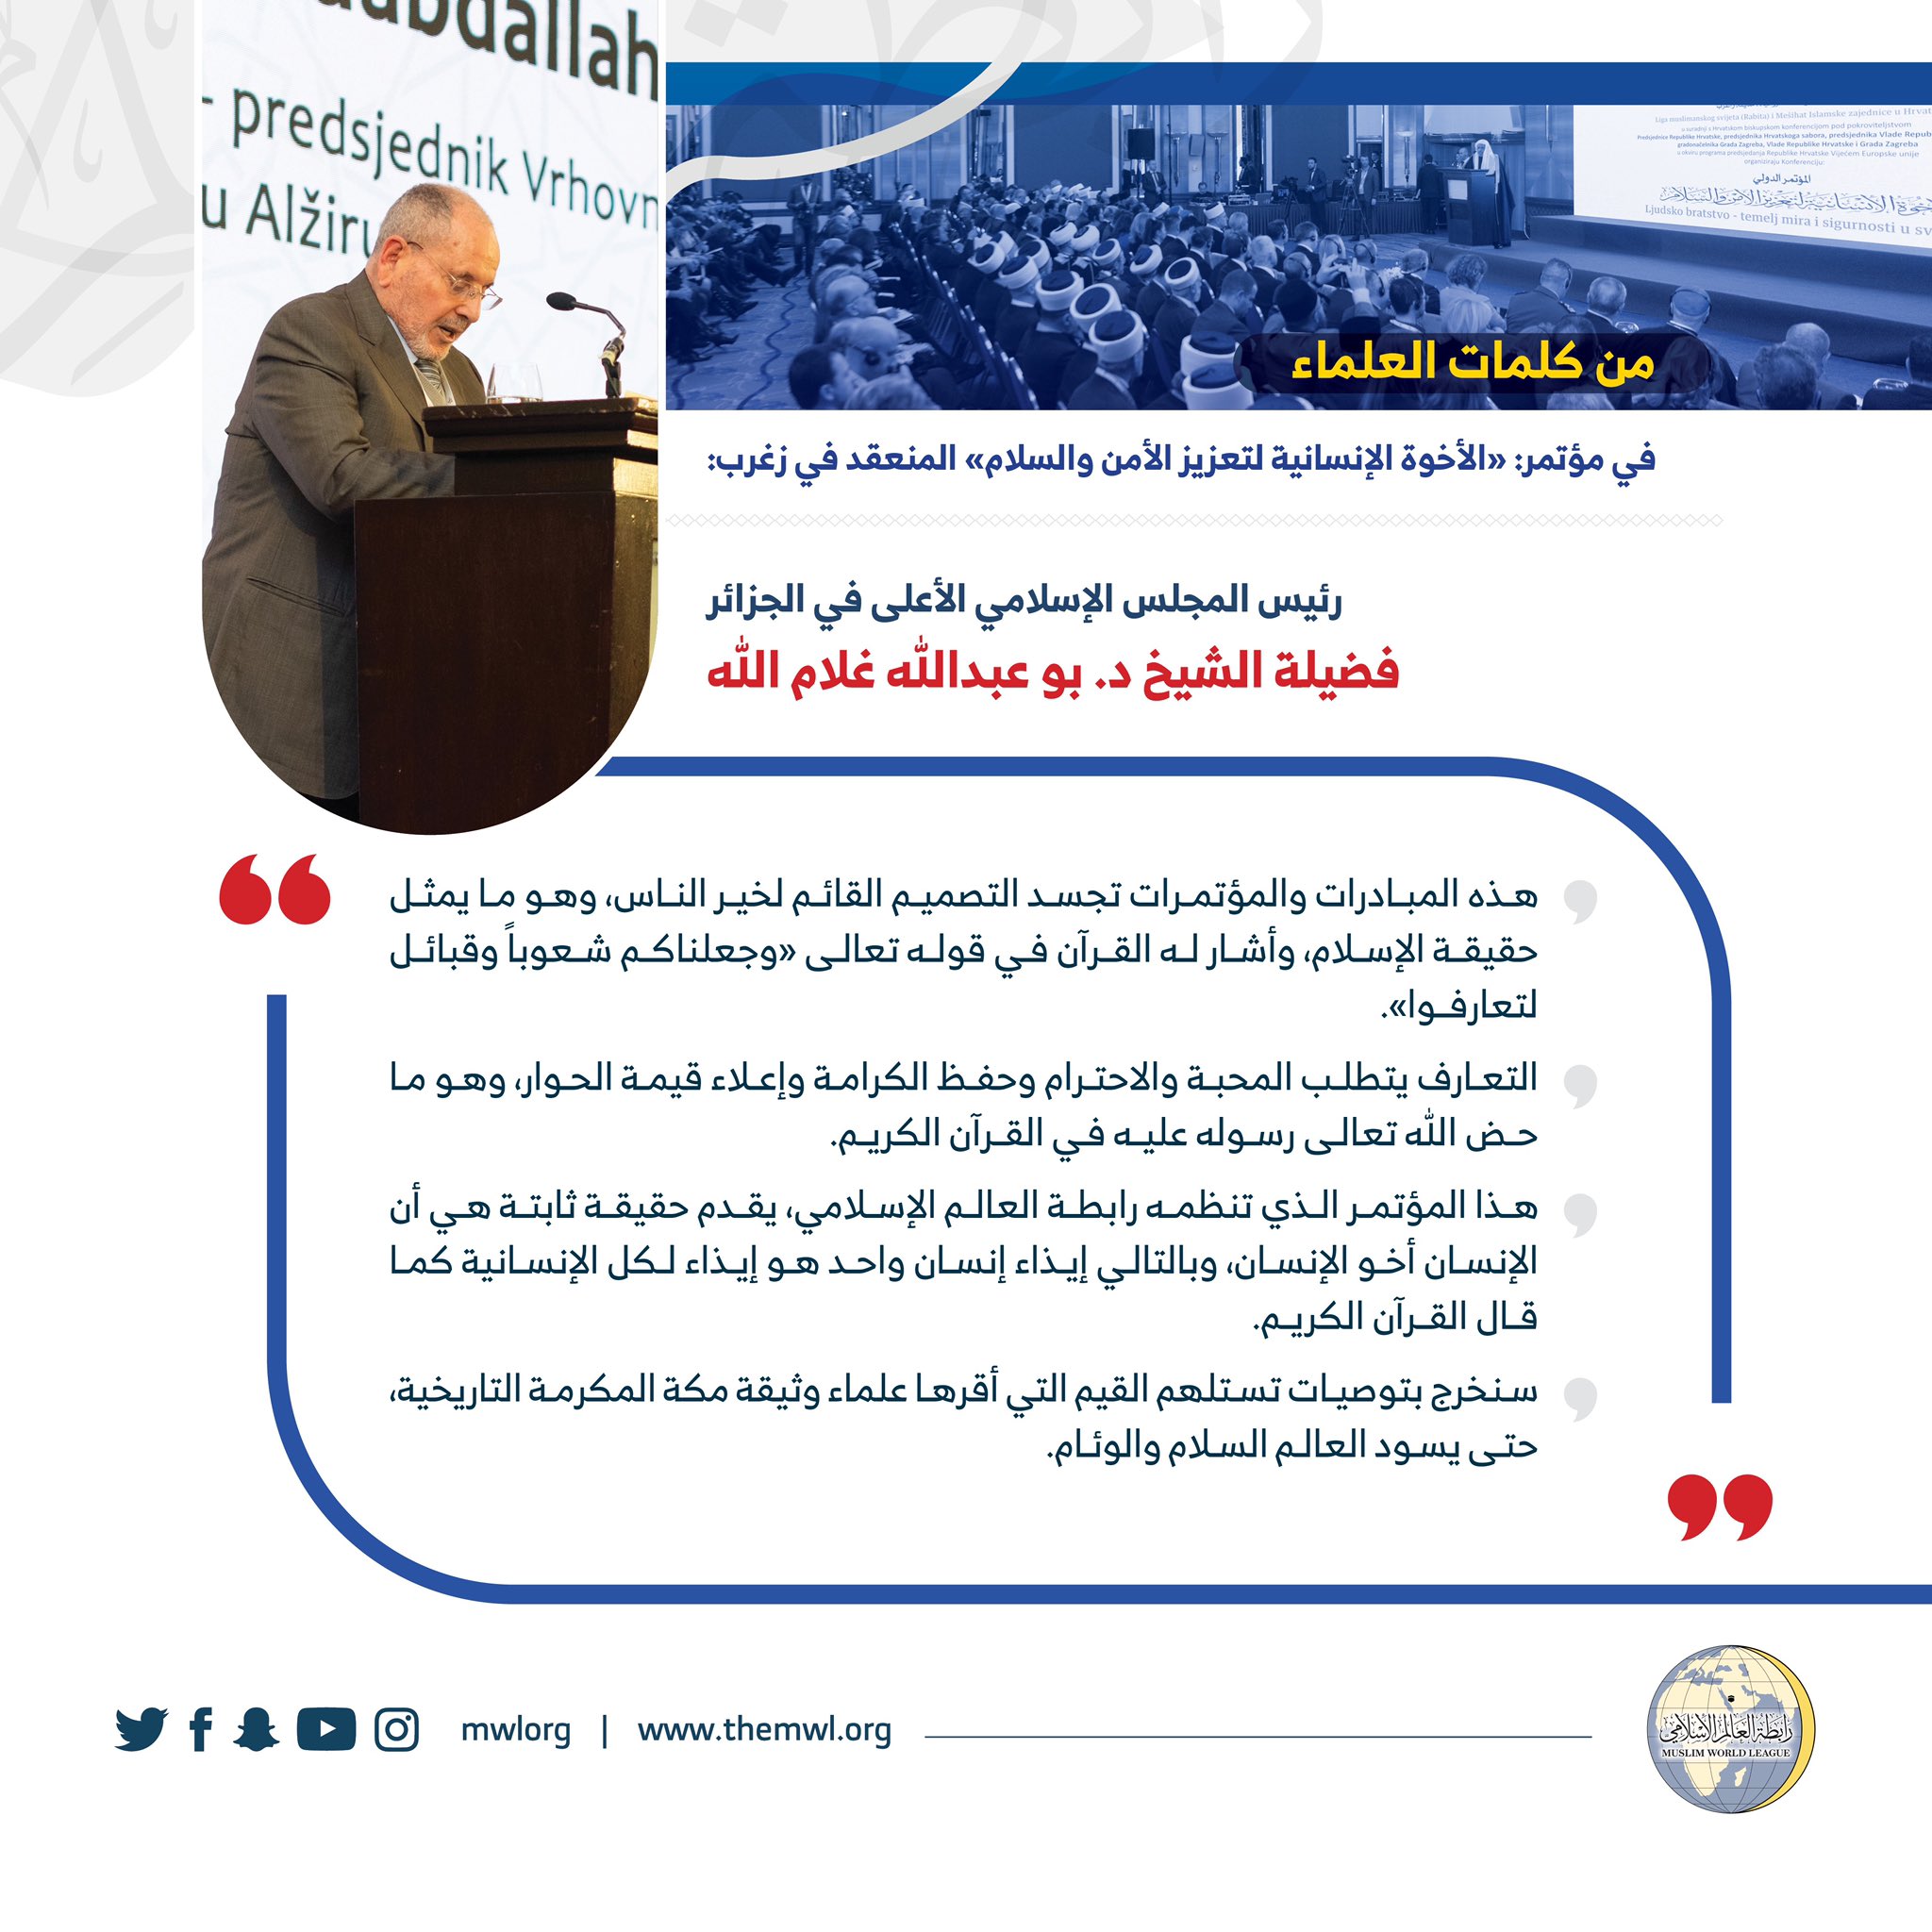 ‏رئيس المجلس الإسلامي في ⁧‫الجزائر‬⁩ فضيلة الشيخ د. بو عبدالله غلام الله متحدثاً رئيساً في مؤتمر ⁧‫رابطة العالم الإسلامي‬⁩ في ⁧‫كرواتيا‬⁩ :